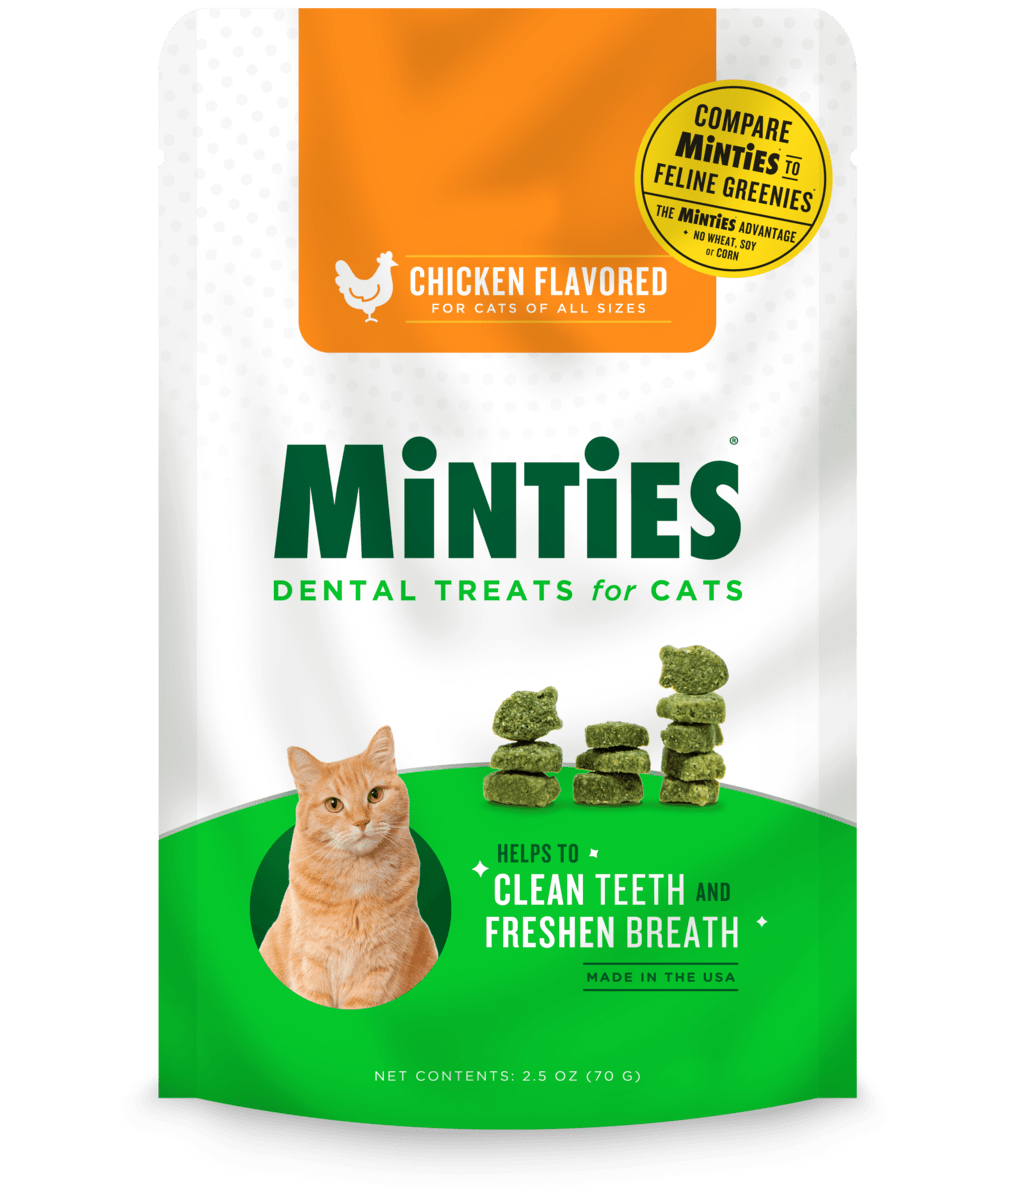 Minties Dental Treats for Cats